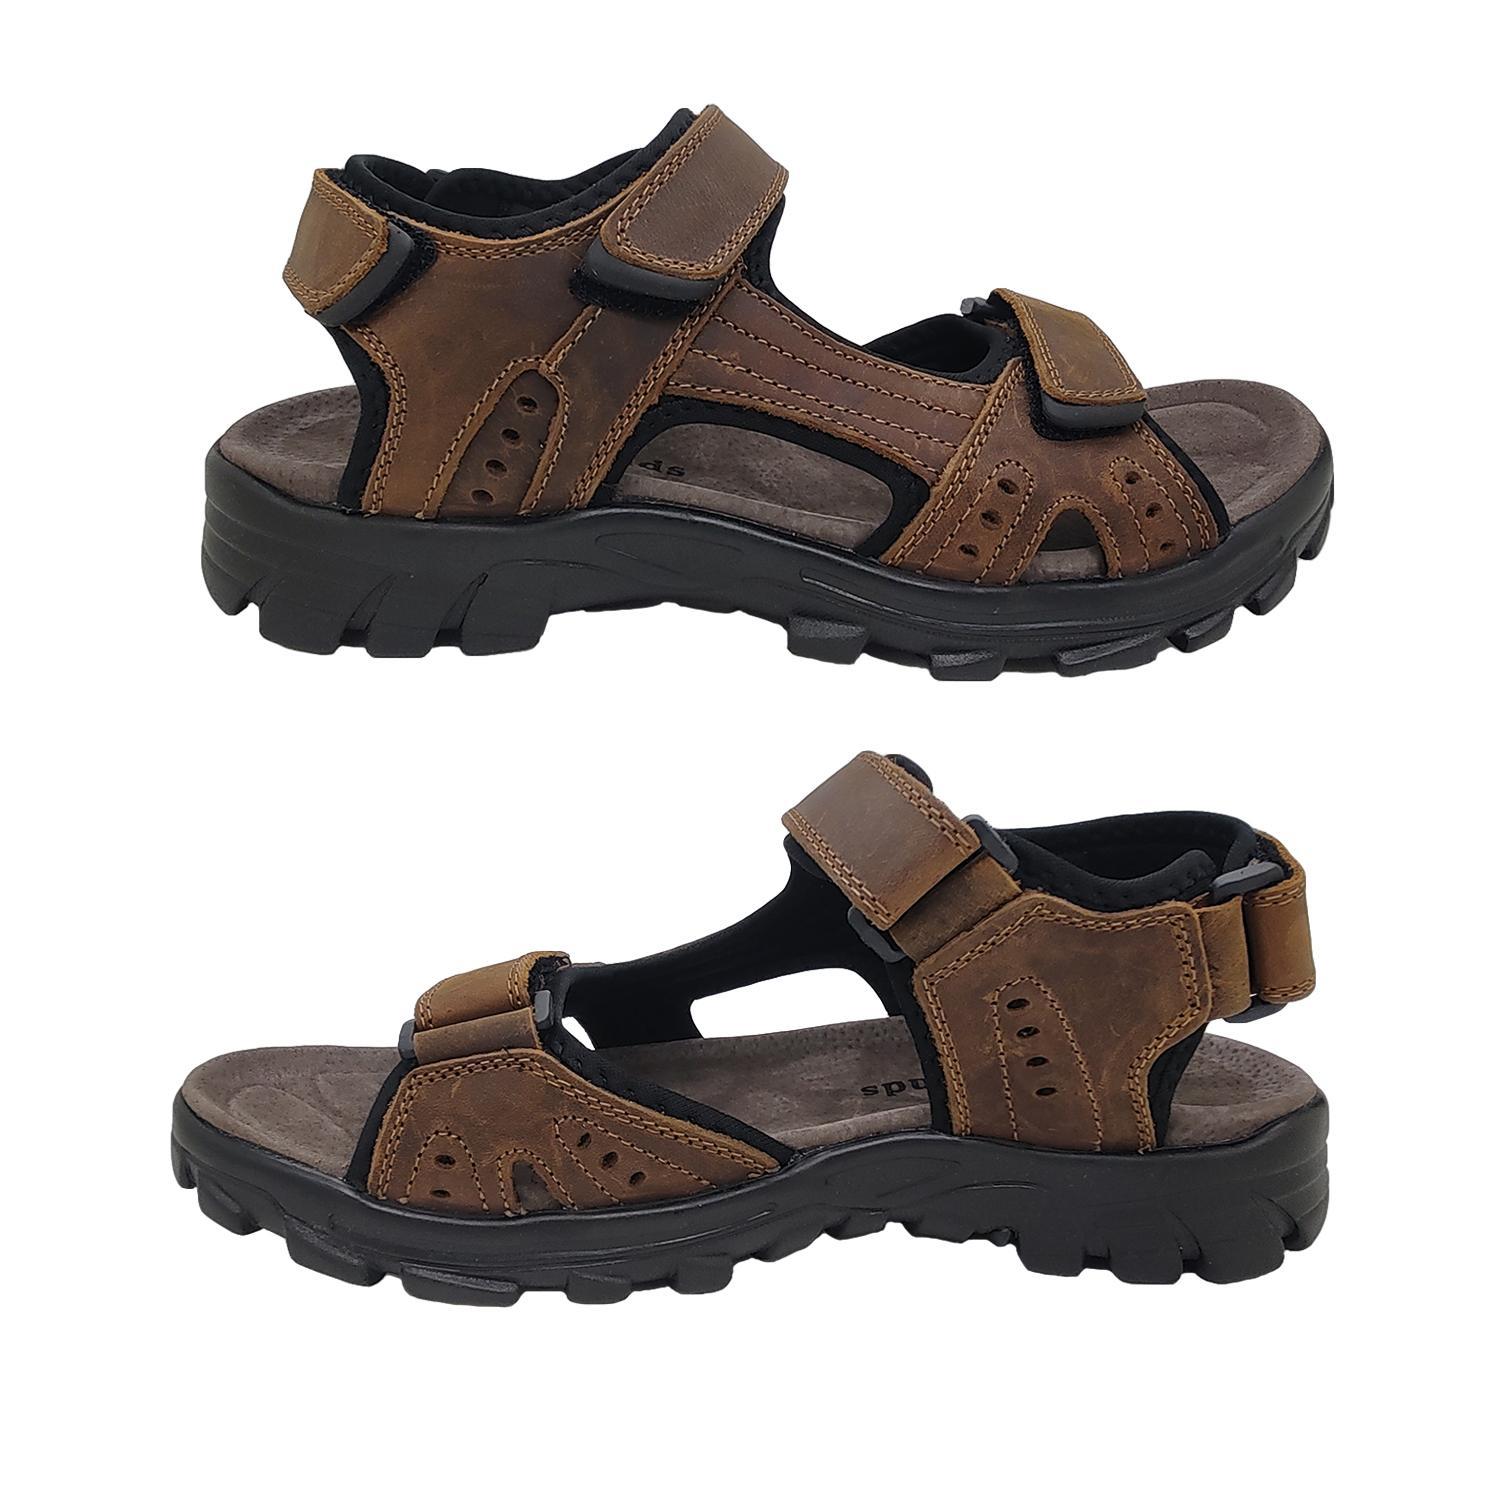 Woodlands Enrique Mens Sandals Leather Upper Multi Adjust Surf Style Comfort-Brown-11